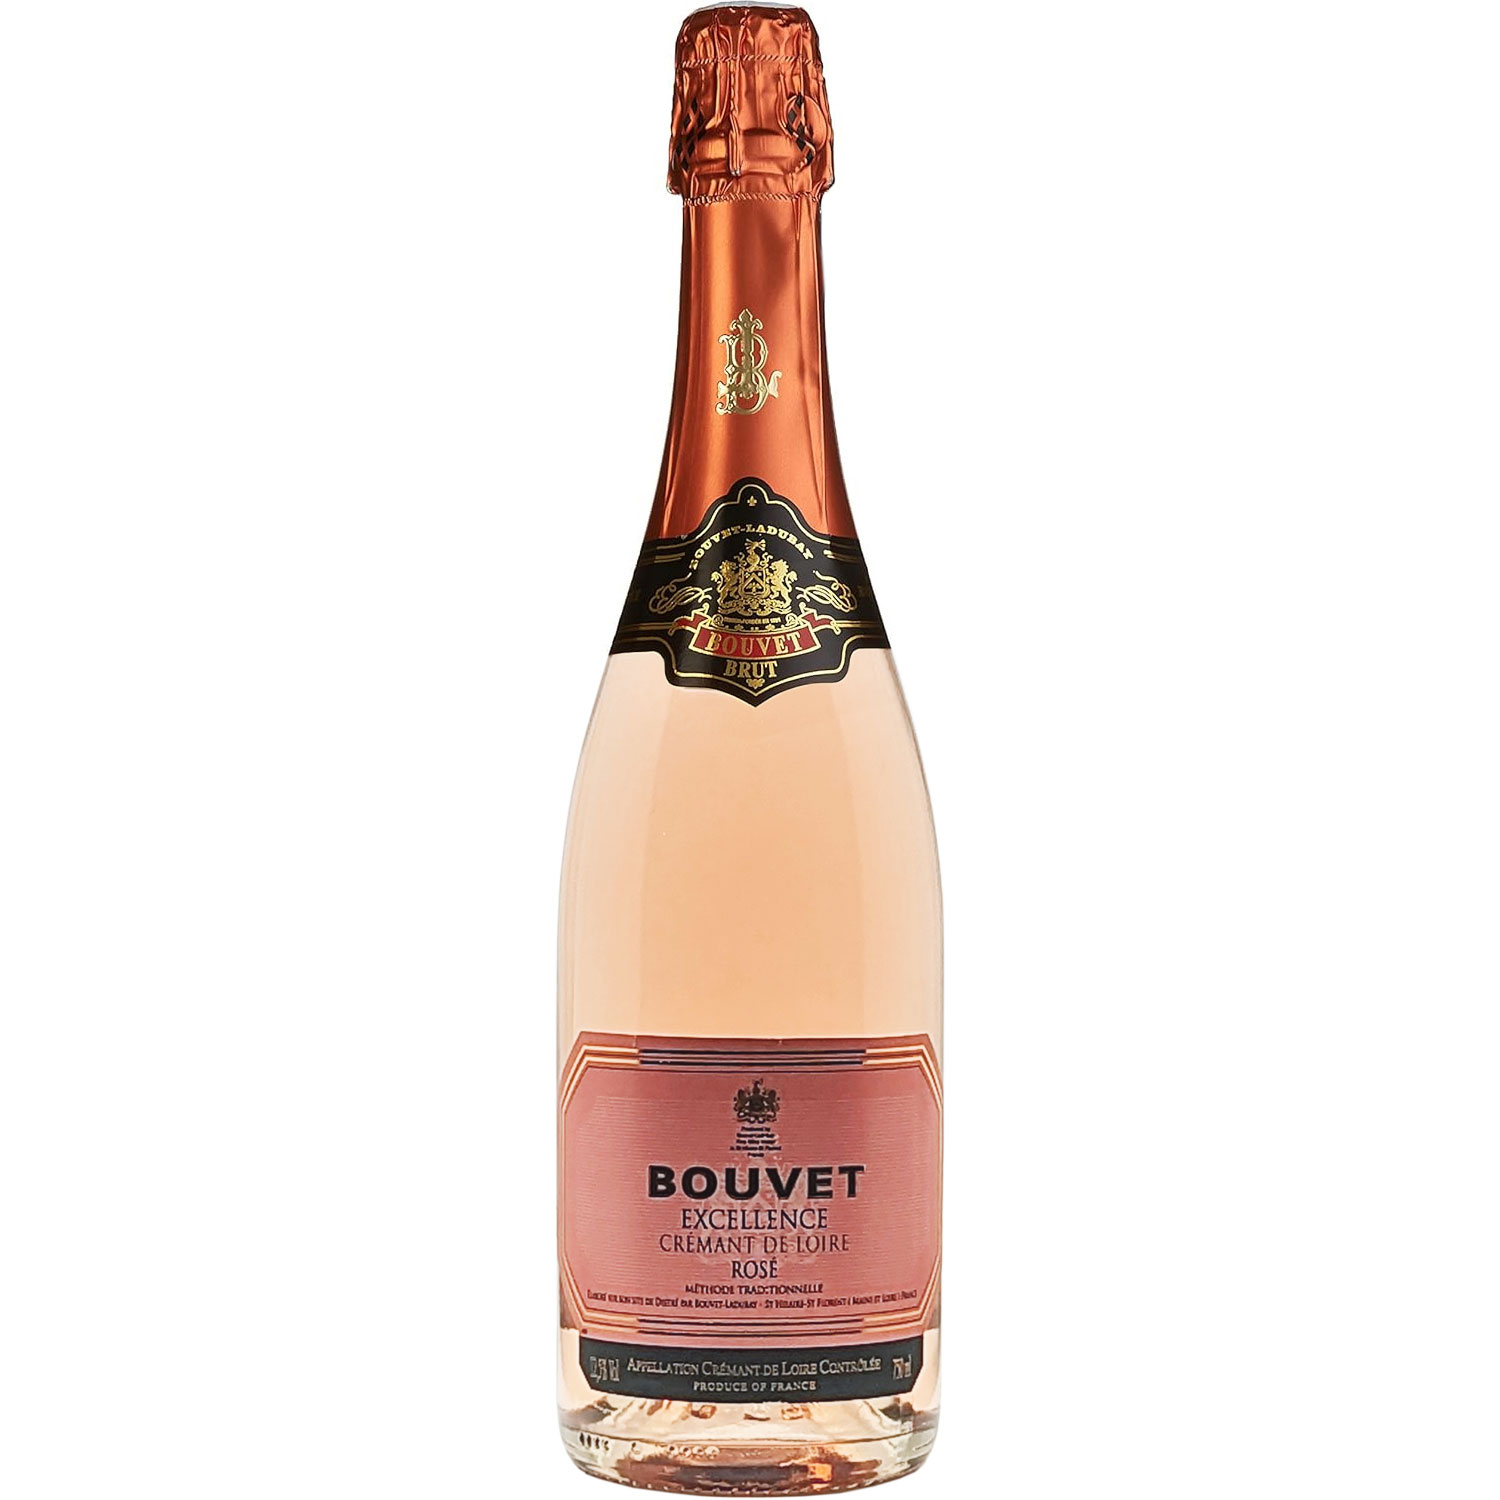 Bouvet Crémant de Loire Rosé Excellence Brut AOP